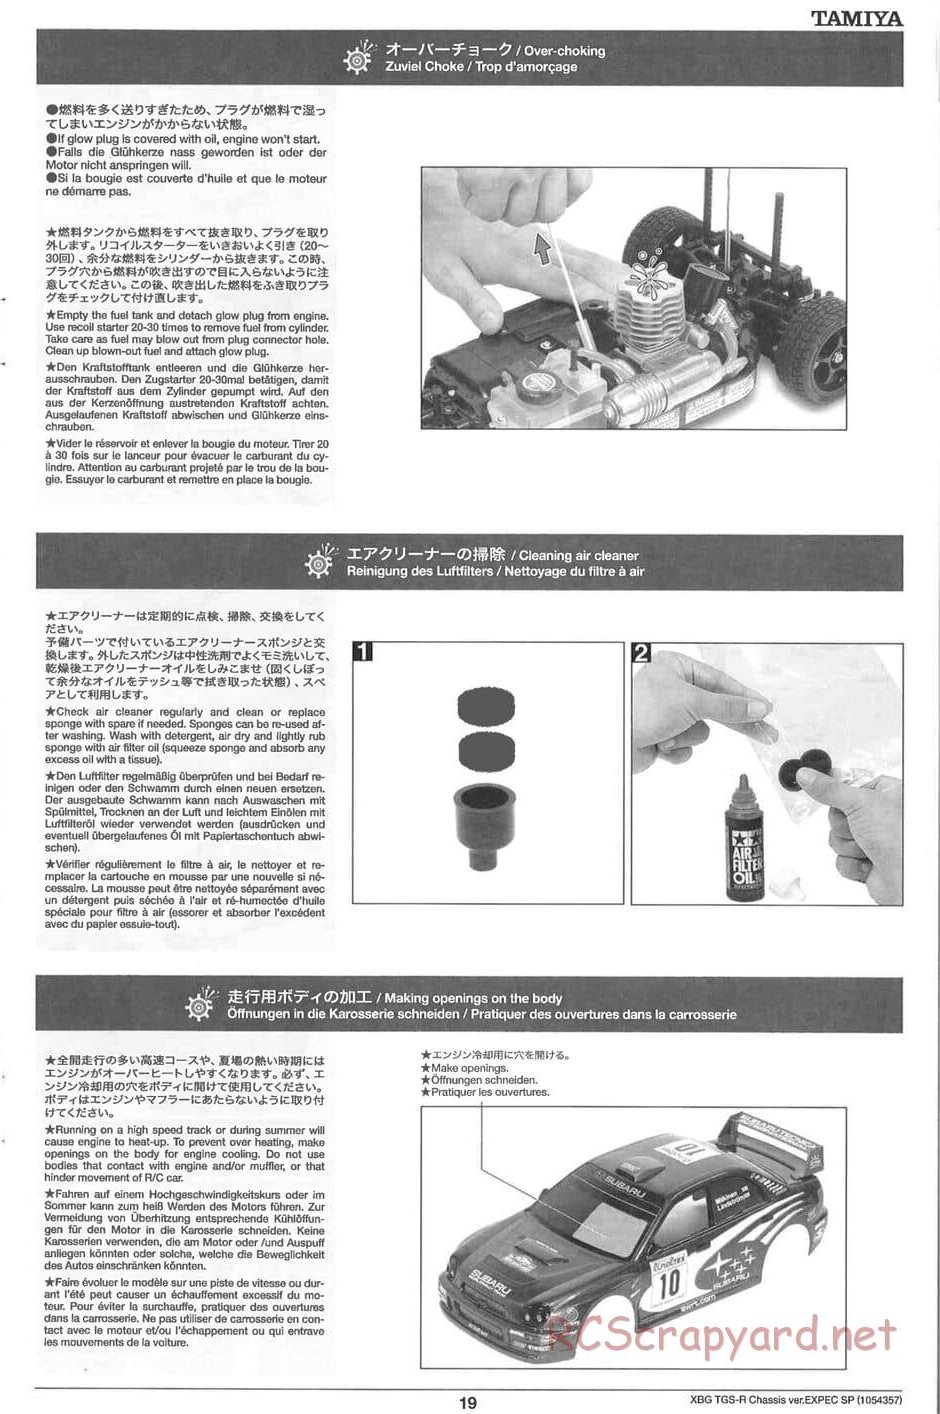 Tamiya - TGS-R Chassis - Manual - Page 19